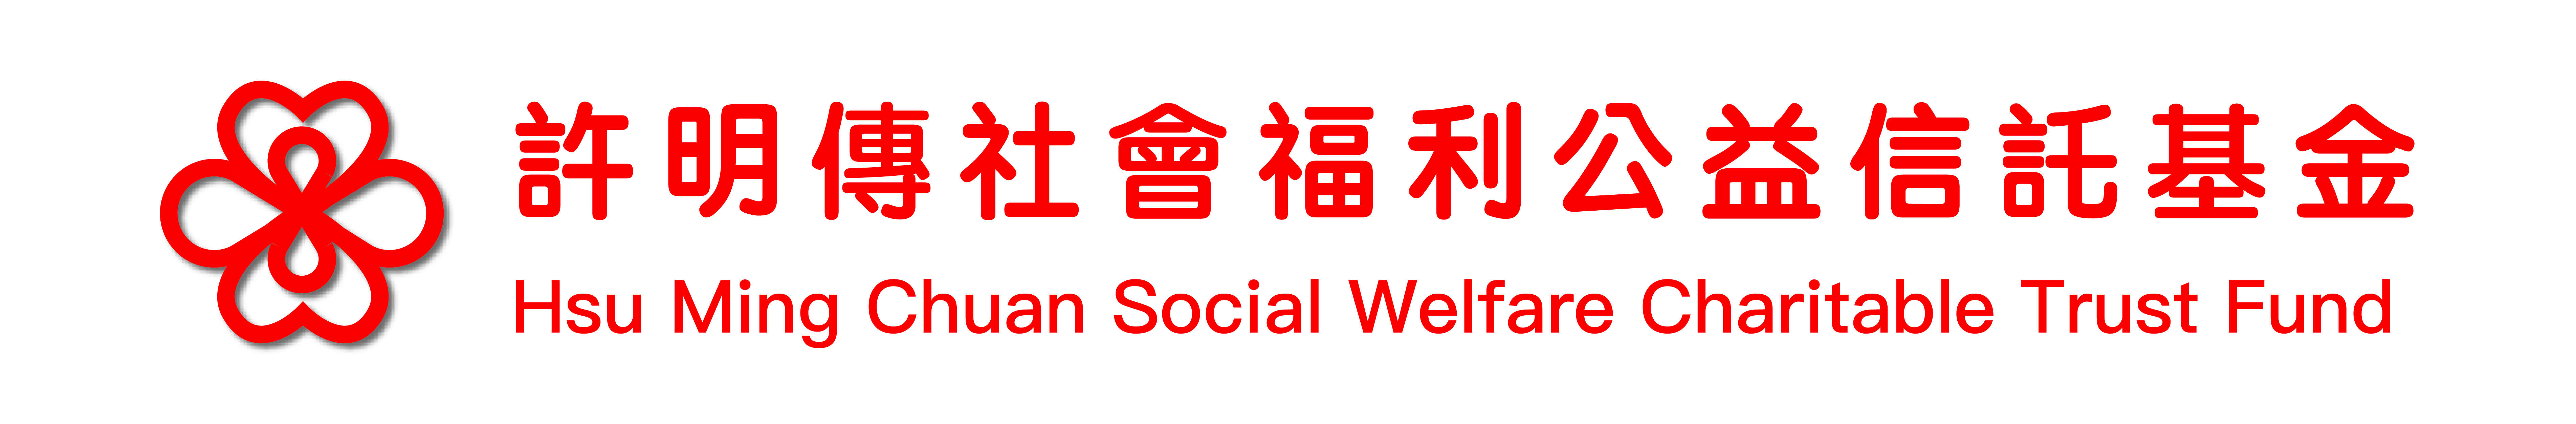 許明傳社會福利公益信託基金